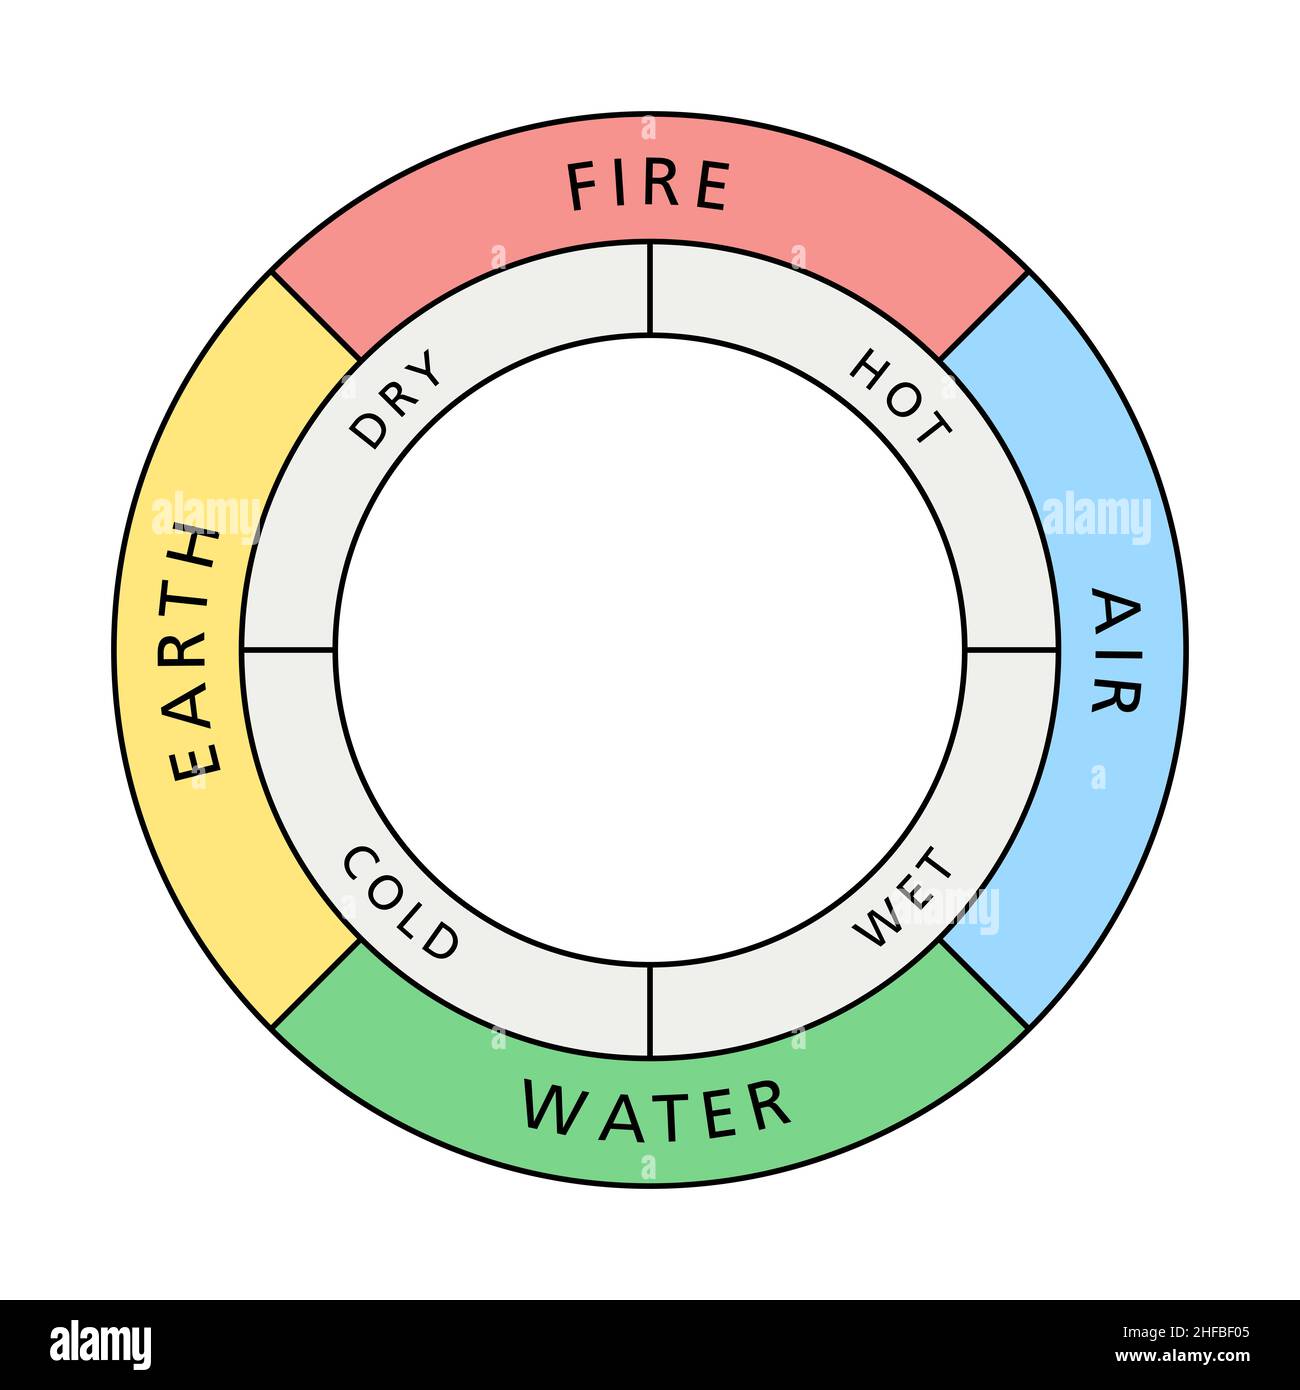 Cercle coloré des quatre éléments classiques feu, terre, eau et air, avec leurs qualités associées chaud, sec, froid et humide. Banque D'Images